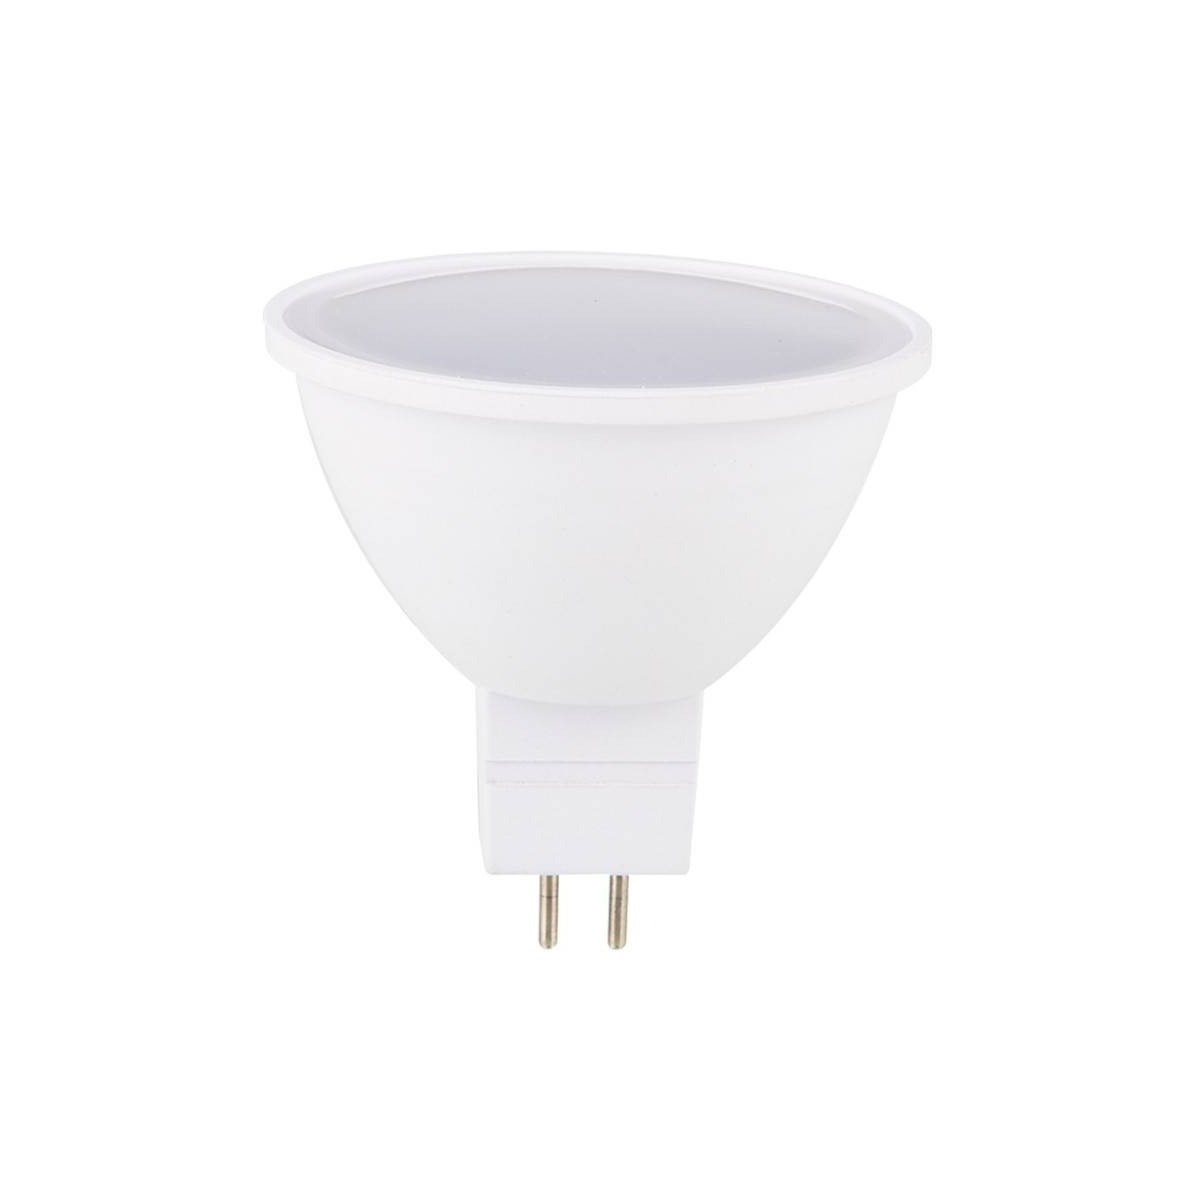 Ampoule dichroïque 12v 50w mr16 gu5.3 lamp h122hq lhalmr1650 resistante  humidite electrique blanc